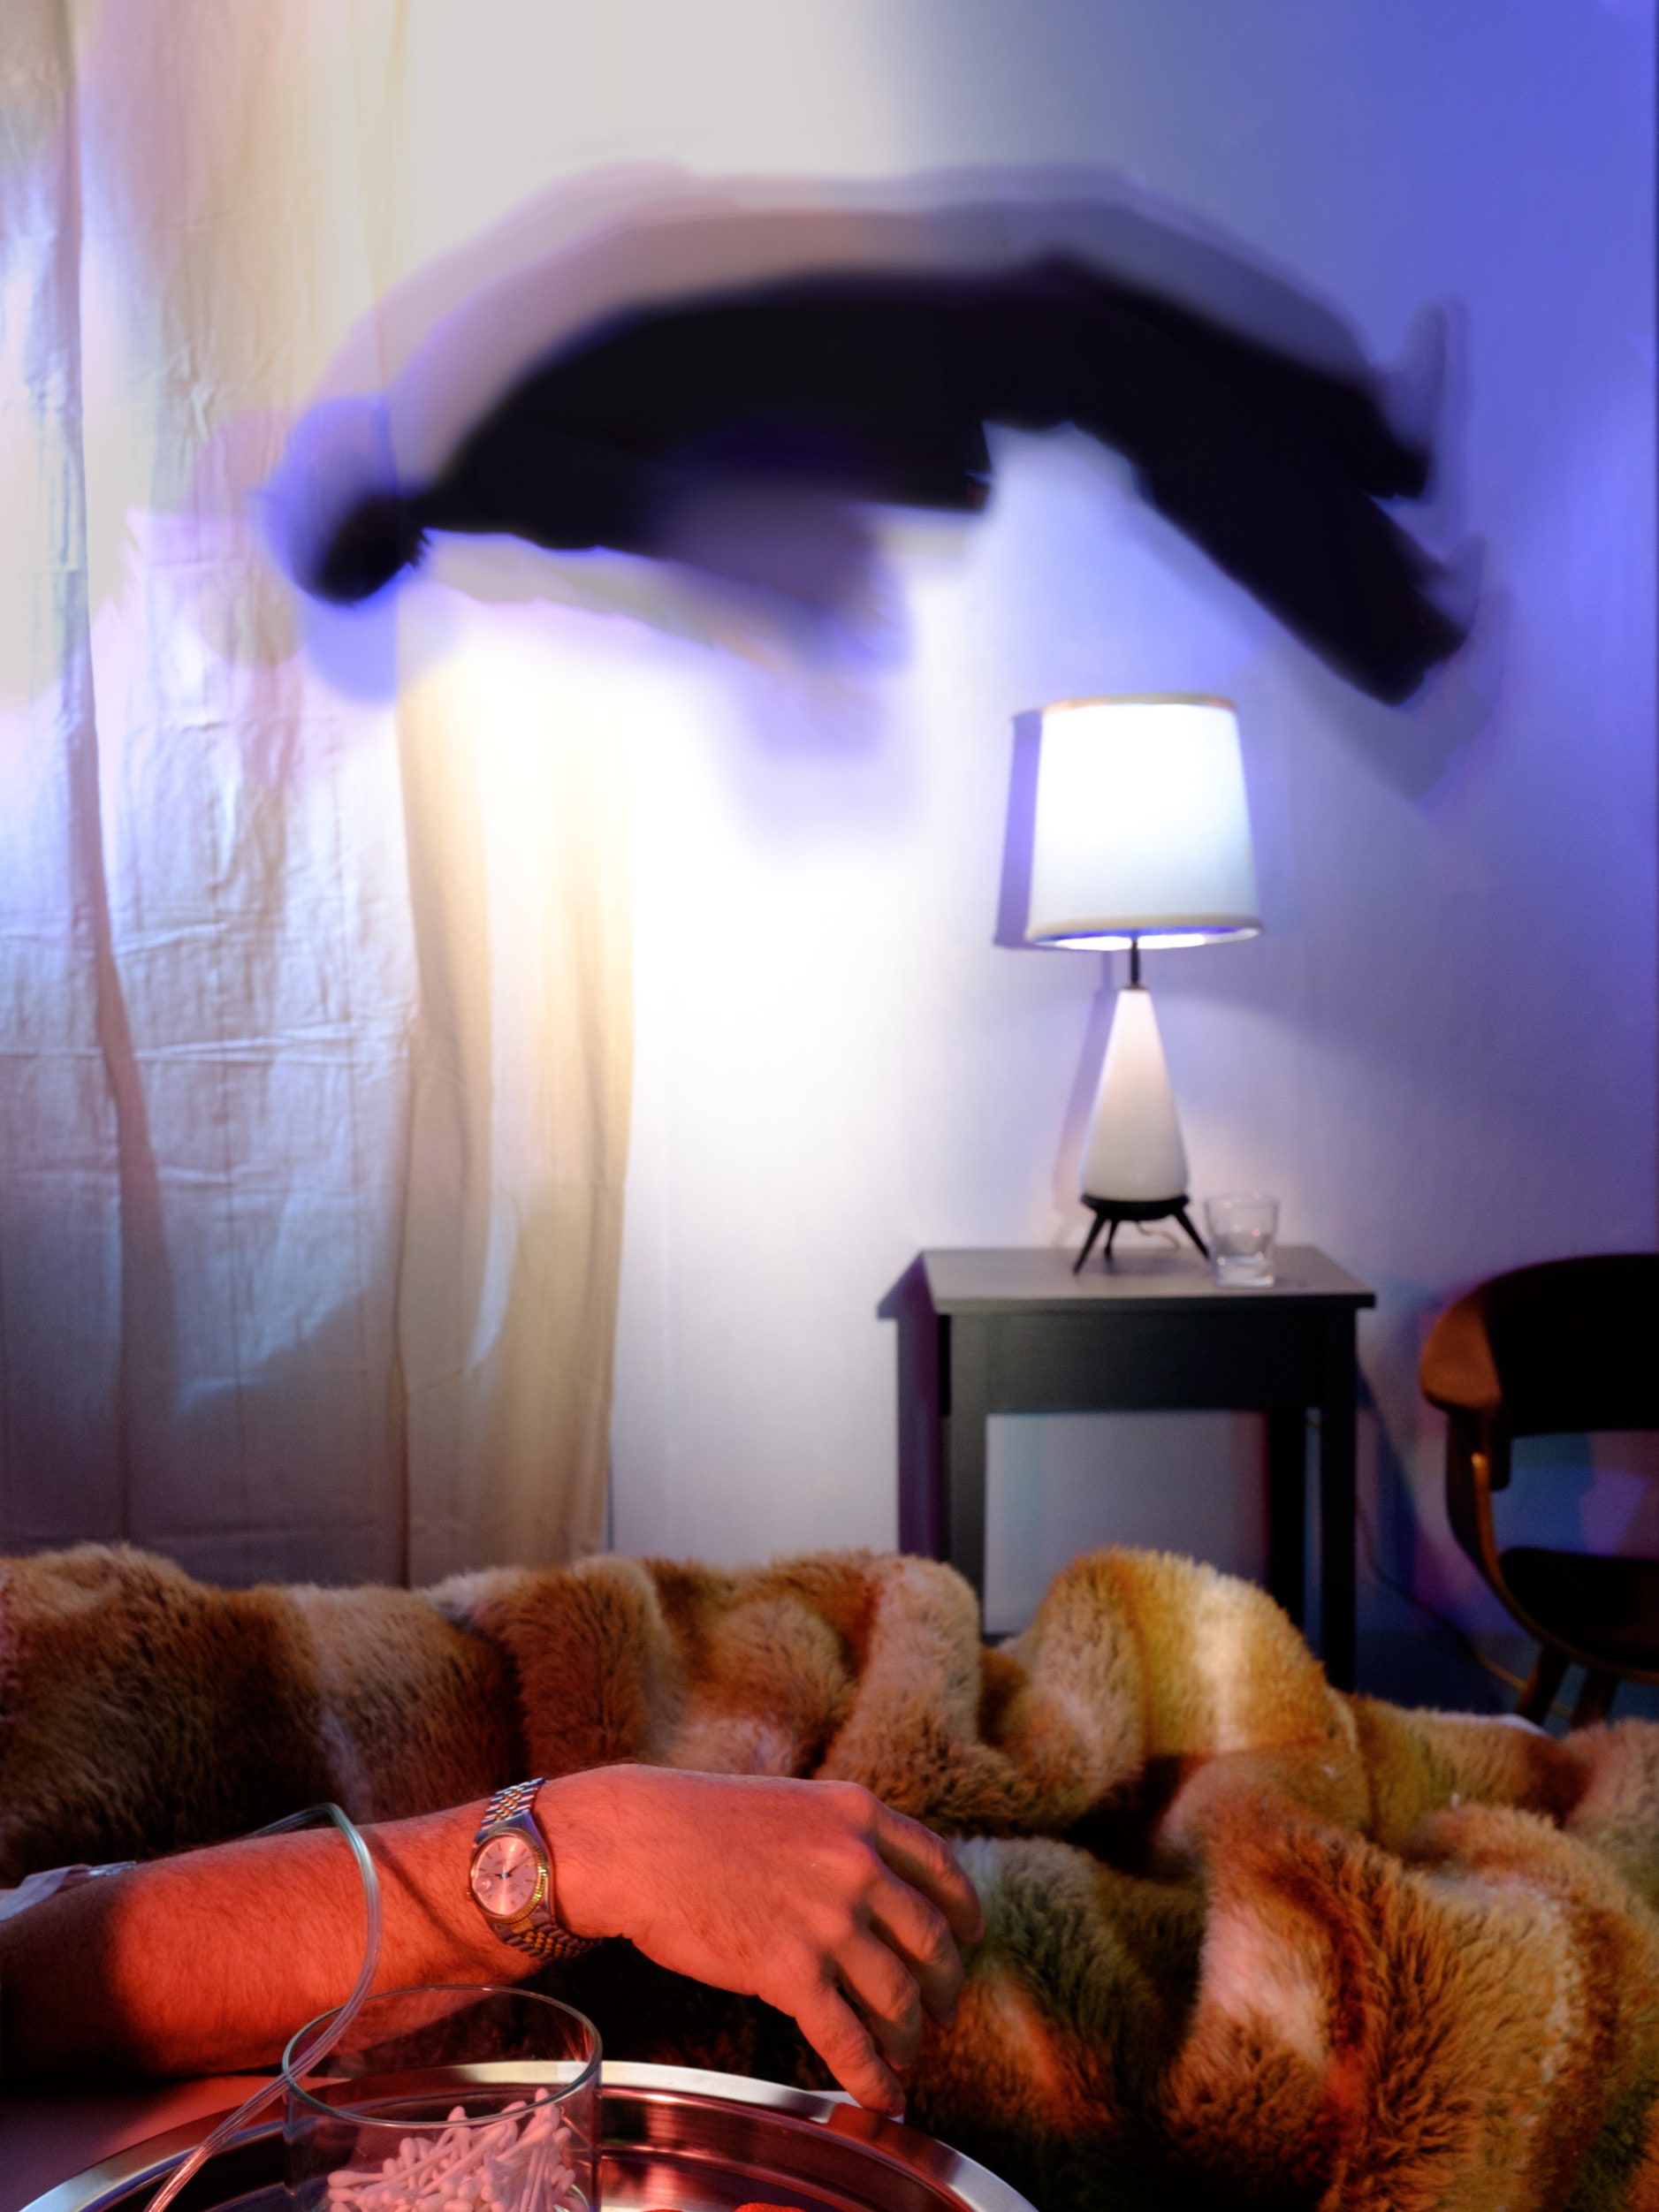 Best of Hidden bedroom cam tumblr